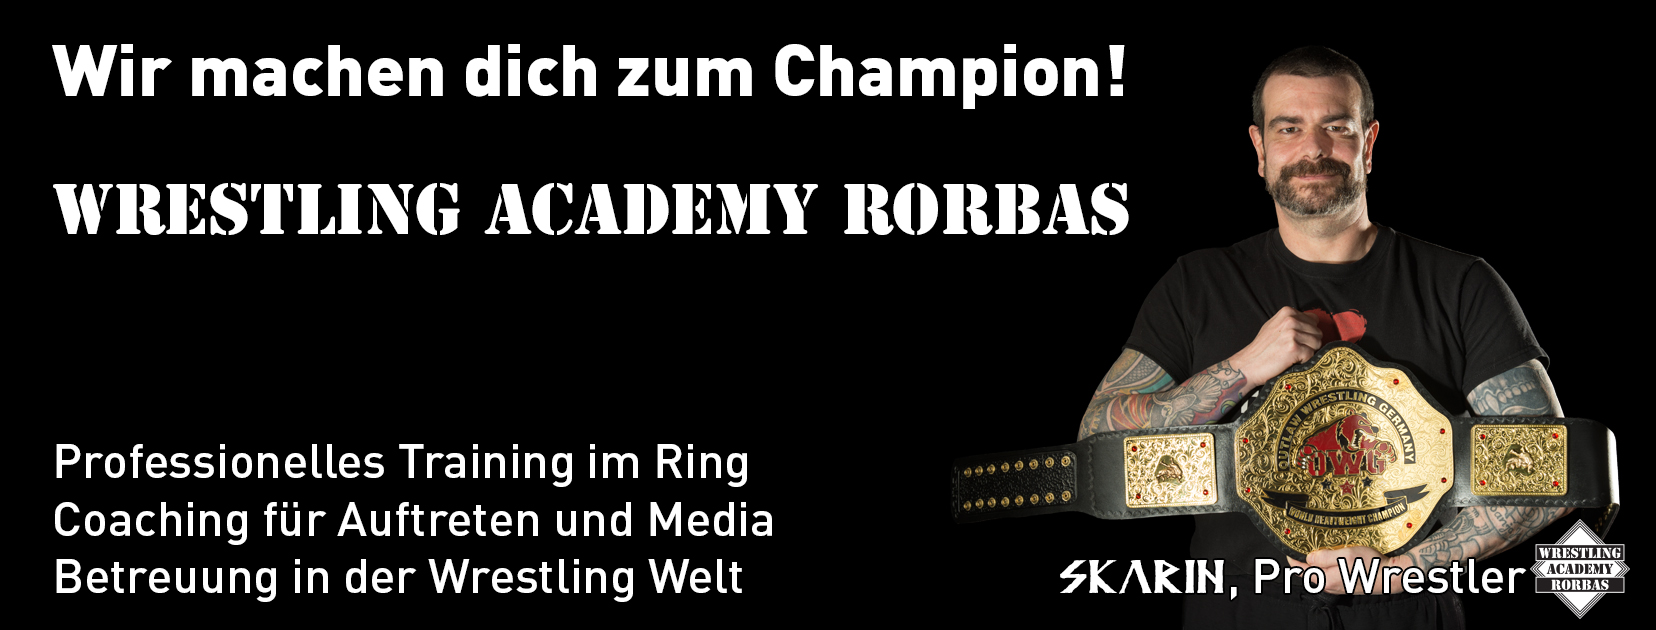 (c) Wrestling-academy.ch